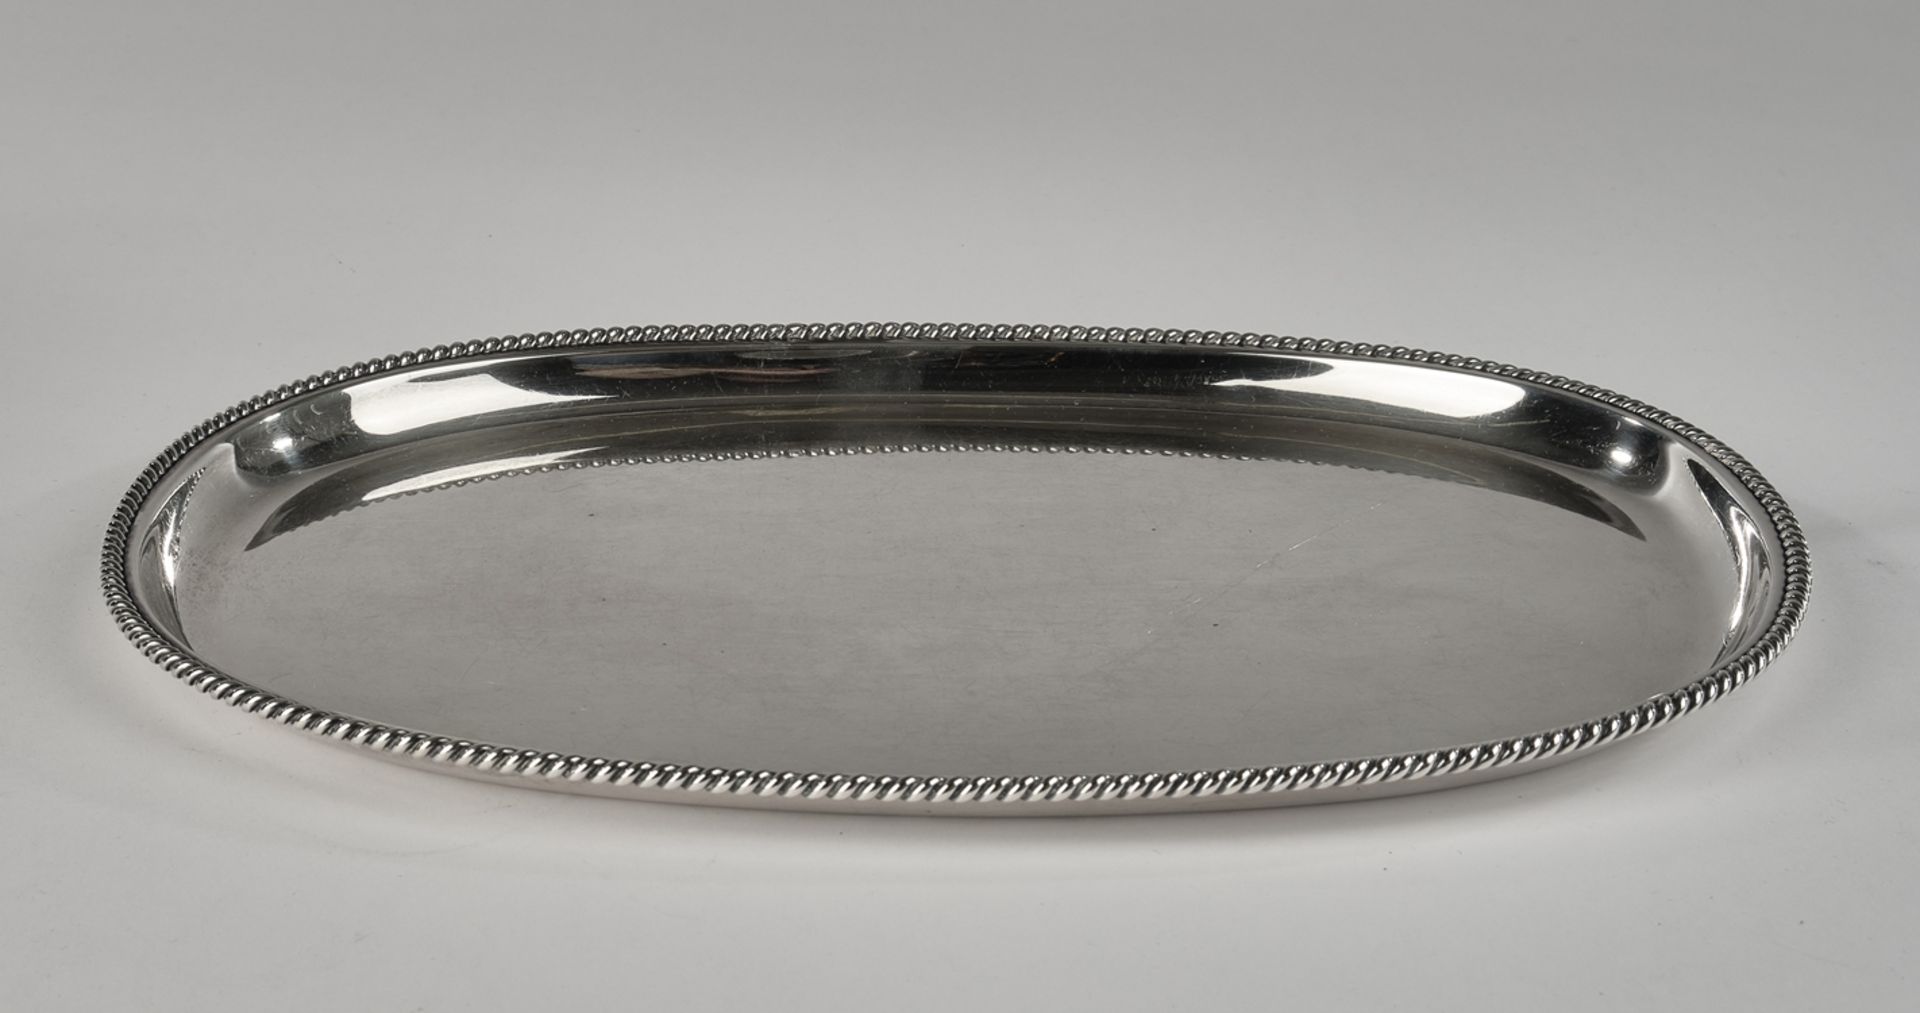 Tablett, Silber 835, Wilkens, oval, Kordelrand, 32 x 23 cm, ca. 486 g, Gebrauchsspuren - Bild 2 aus 2